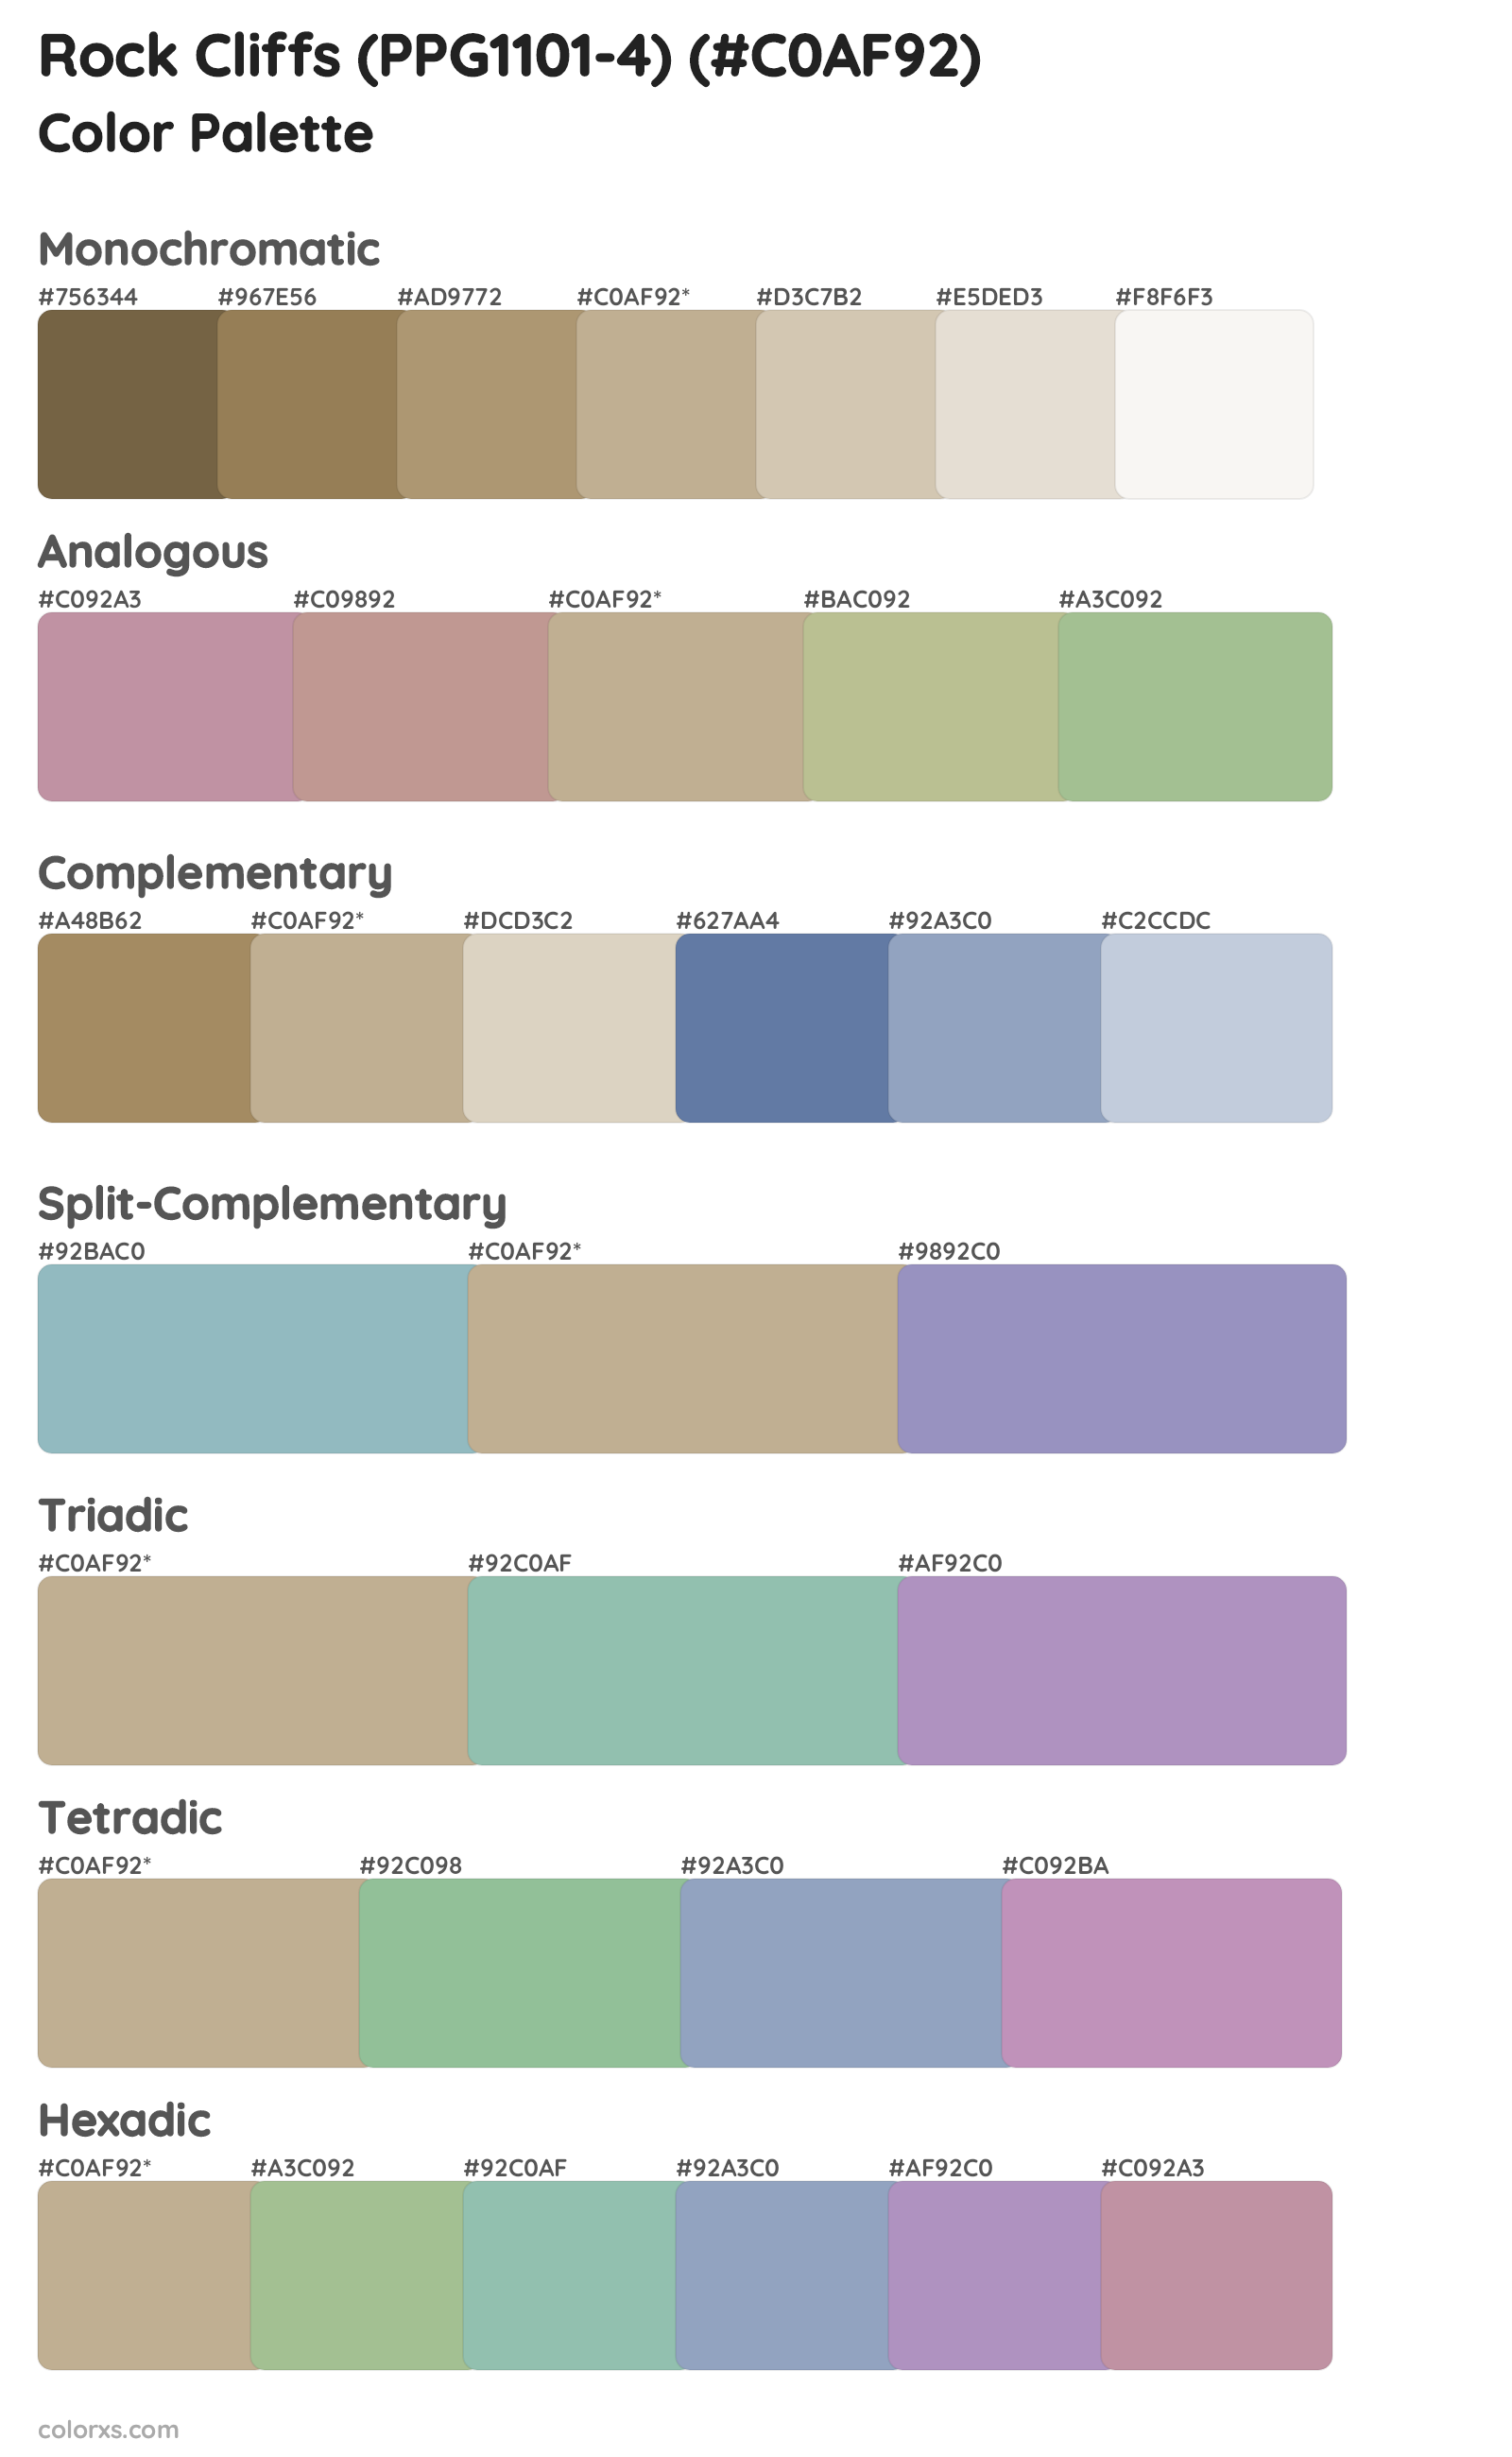 Rock Cliffs (PPG1101-4) Color Scheme Palettes